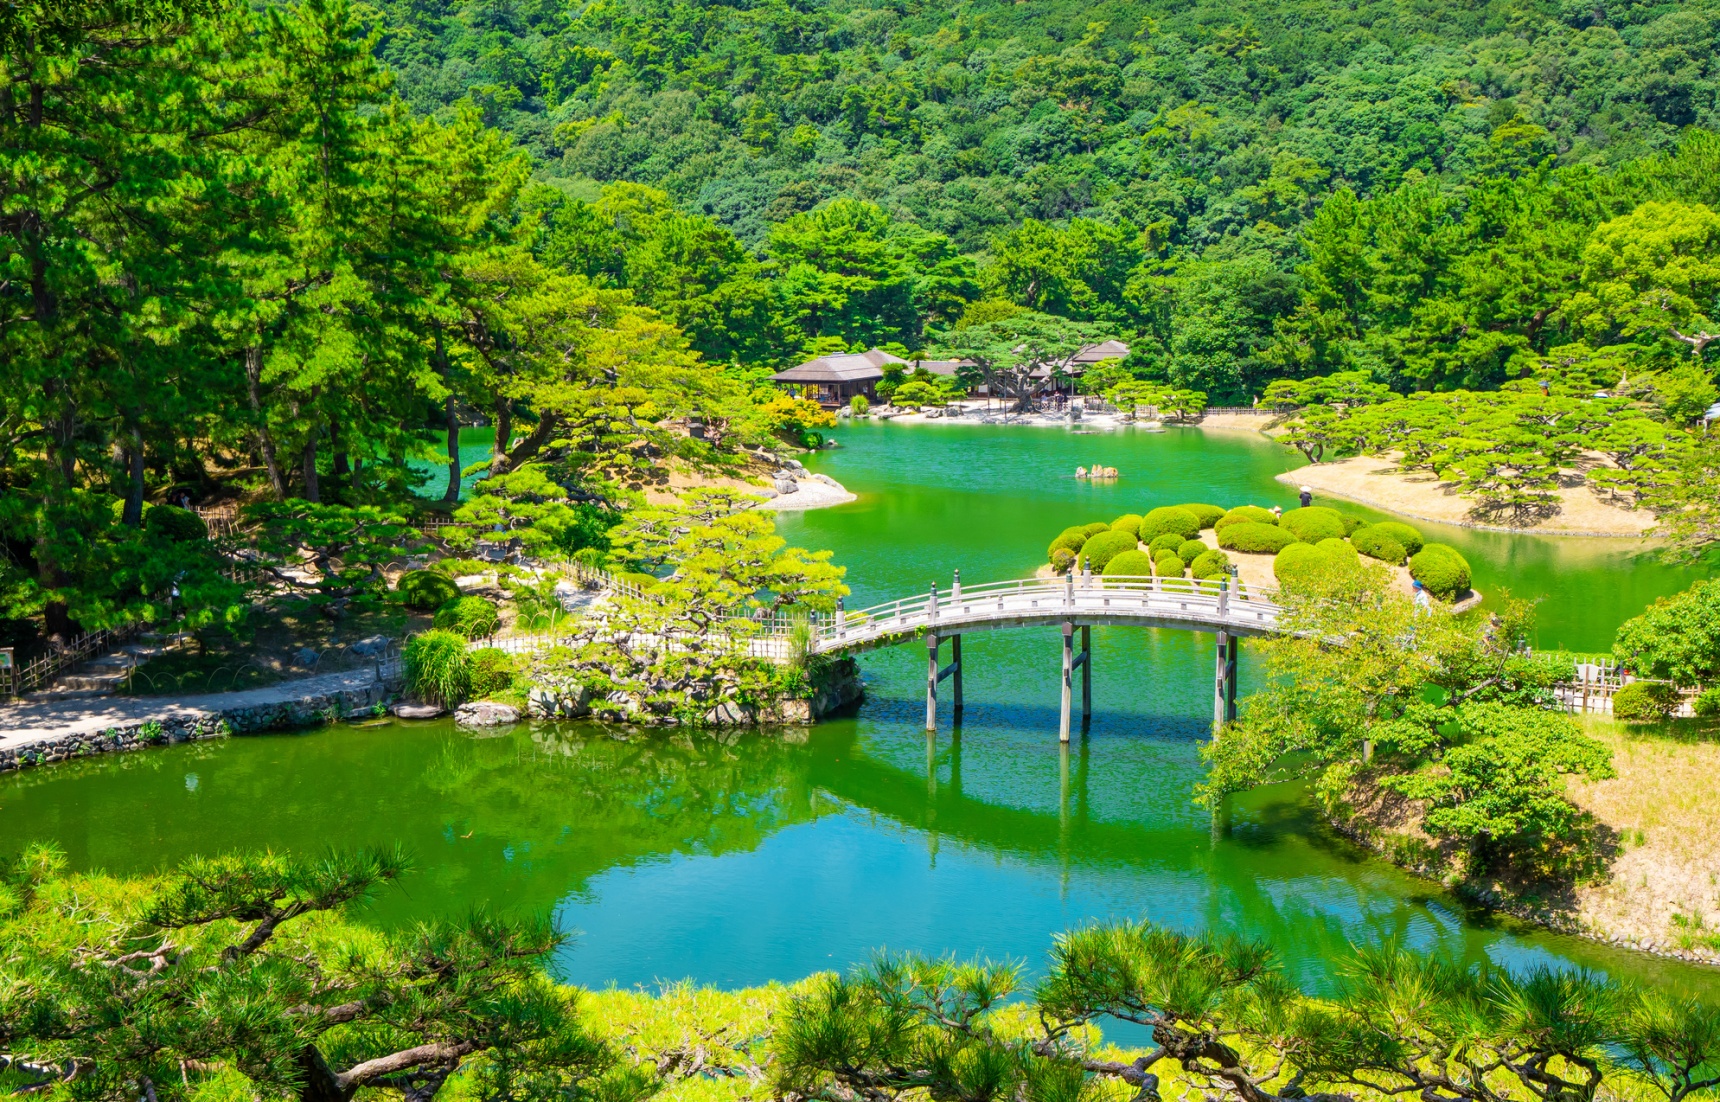 Ritsurin: Shikoku's Finest Daimyo Garden